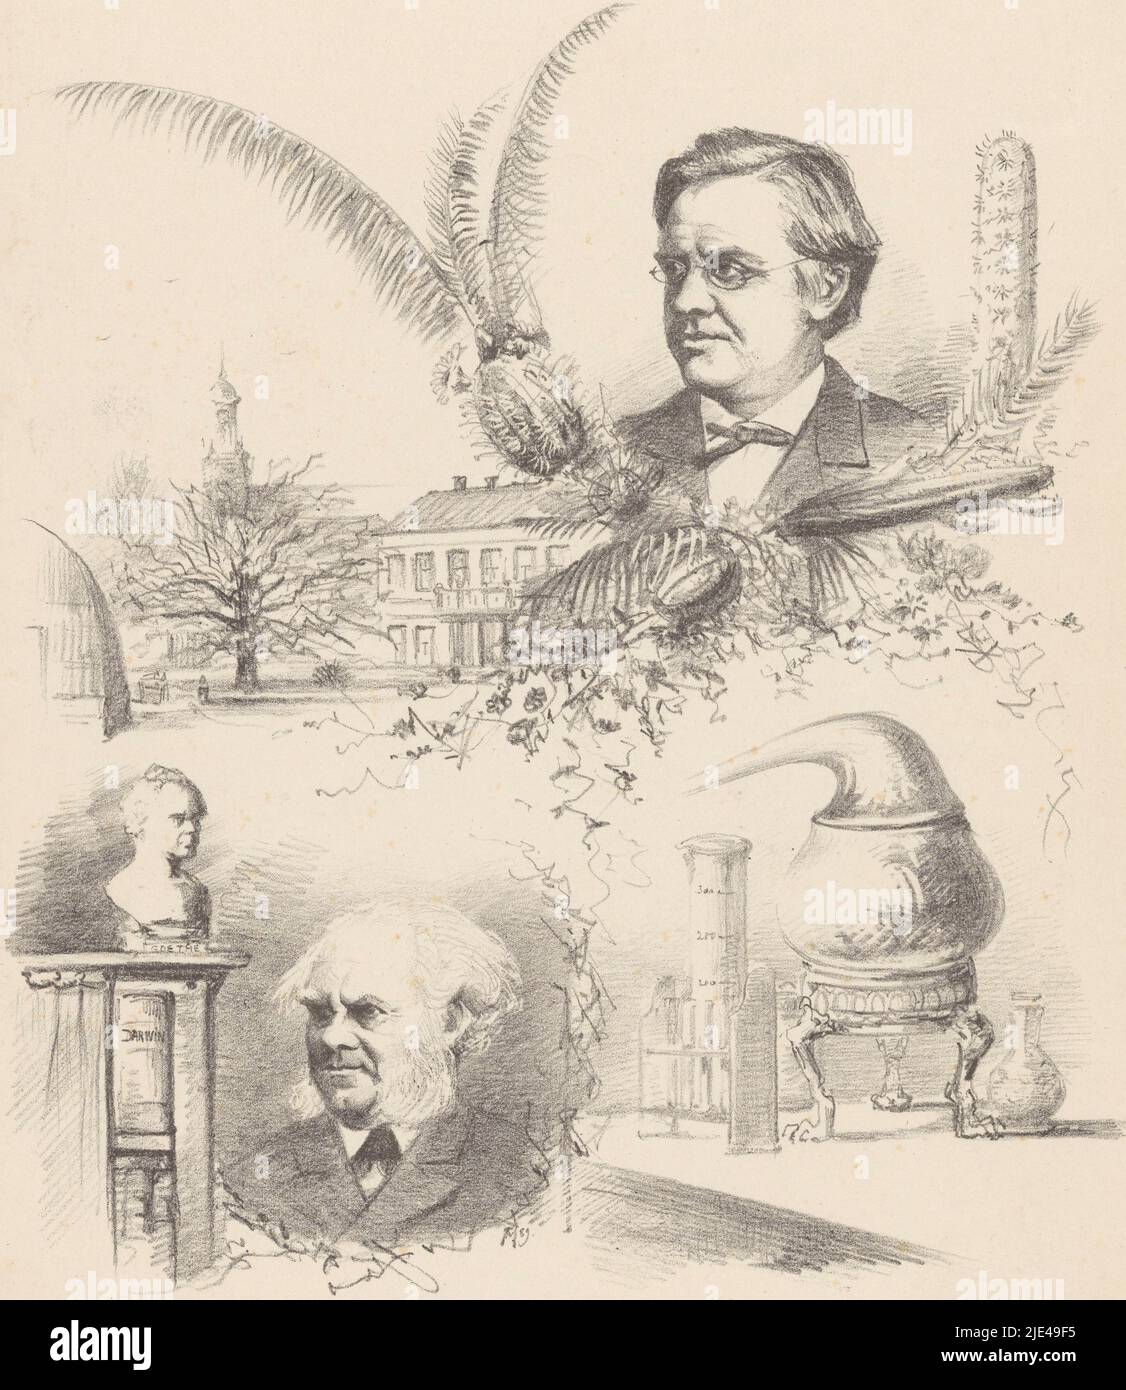 Quattro rappresentazioni riguardanti il congresso sulla natura e la medicina a Leiden, Theo van Hoytema, 1889, in alto un ritratto del Prof. Dr. W.F.R. Suringar; in fondo un ritratto del Prof. Dr. J.W. Sparare e un busto di Goethe. A sinistra l'hortus botanicus di Leiden; a destra un tavolo con vetreria da laboratorio., tipografia: Theo van Hoytema, (citato sull'oggetto), 1889, carta, h 278 mm x w 239 mm Foto Stock